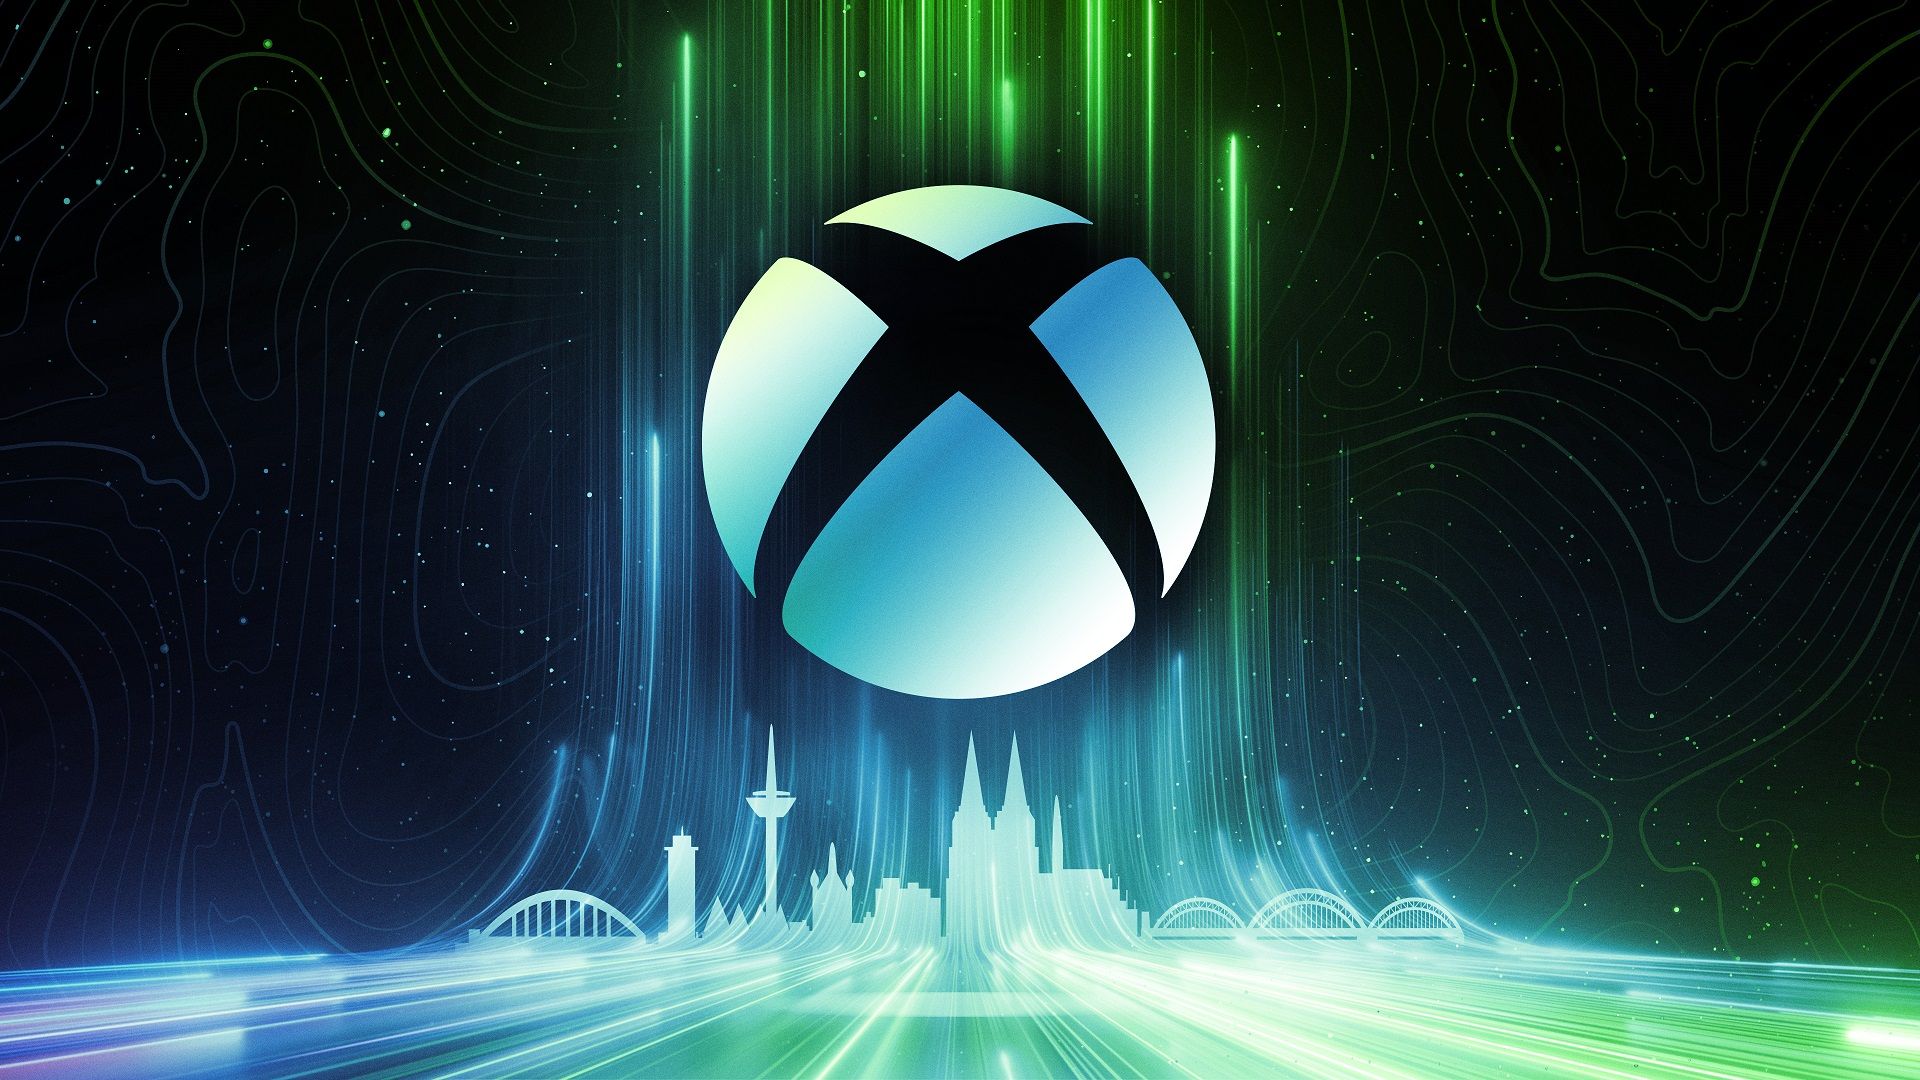 #Hochgelobter First-Party-Titel von Xbox soll bald für die Konkurrenz erscheinen, sagt ein Insider